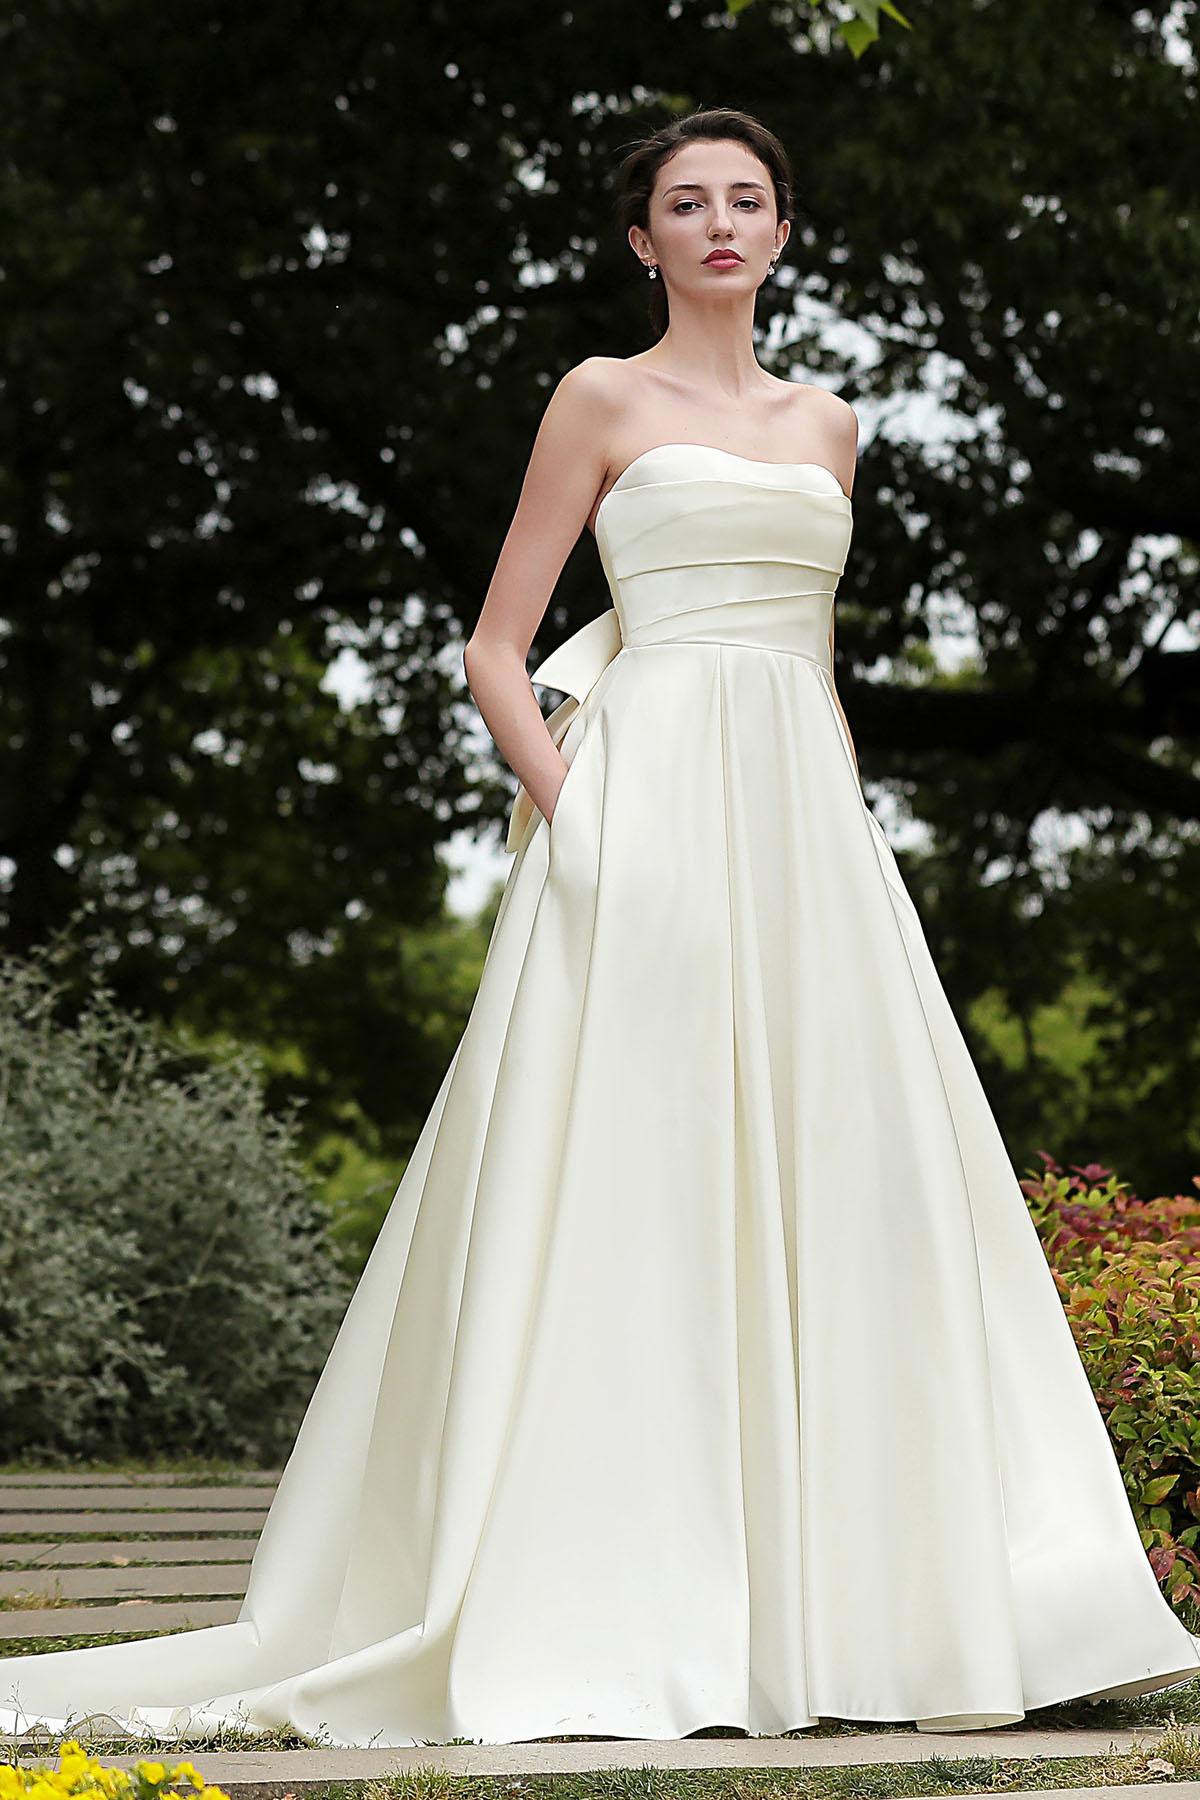 SIMPLE SATIN WEDDING Dresses With Pocket V-Neck Off The Shoulder Bridal  Gowns £119.99 - PicClick UK